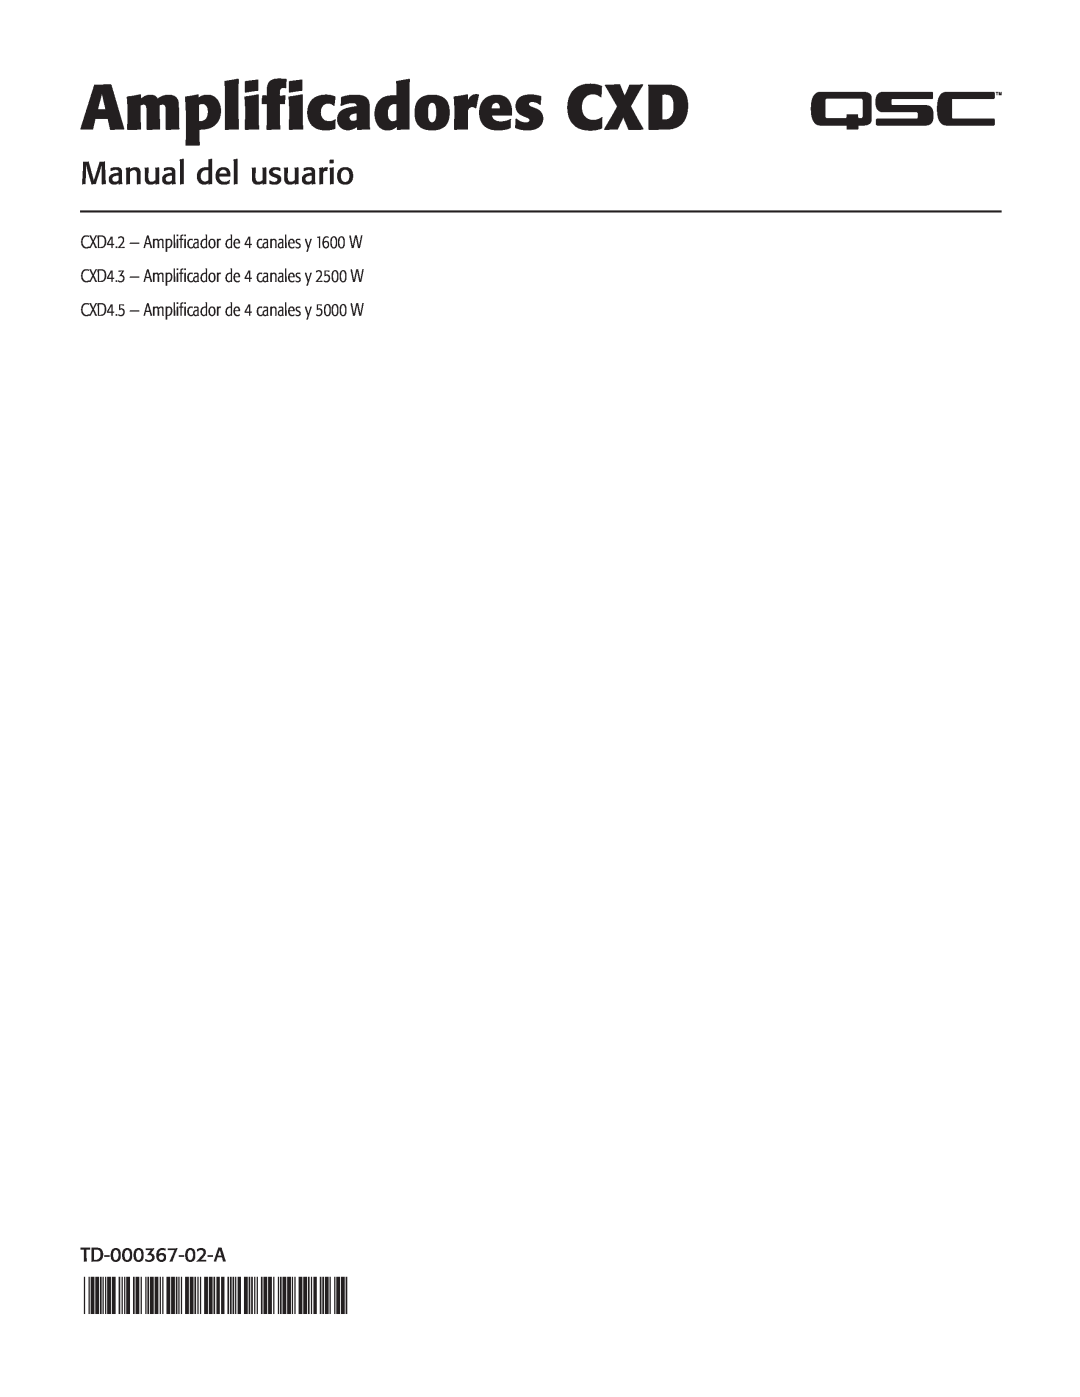 QSC Audio CXD4.5, CXD4.2, CXD4.3 manual Amplificadores CXD, Manual del usuario, TD-000367-02-A 